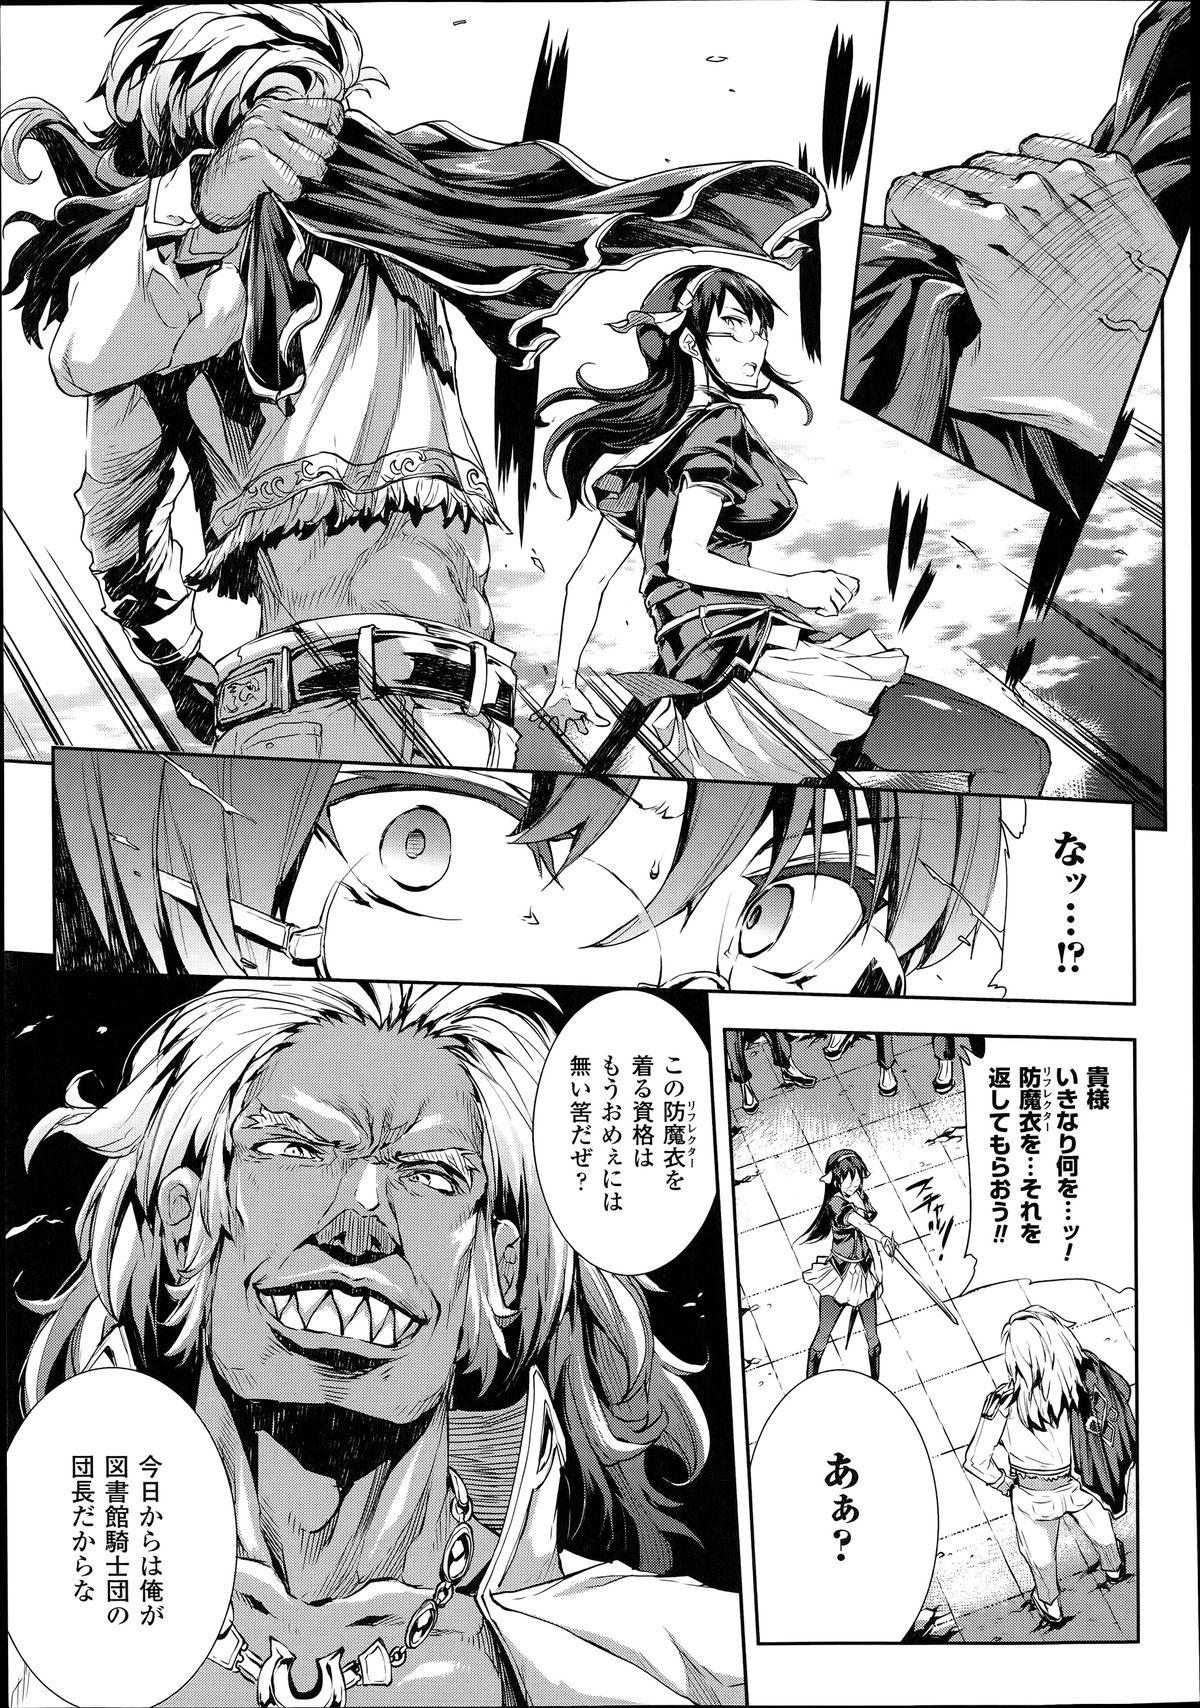 [Erect Sawaru] Shinkyoku no Grimoire -PANDRA saga 2nd story- Ch. 7-12 129